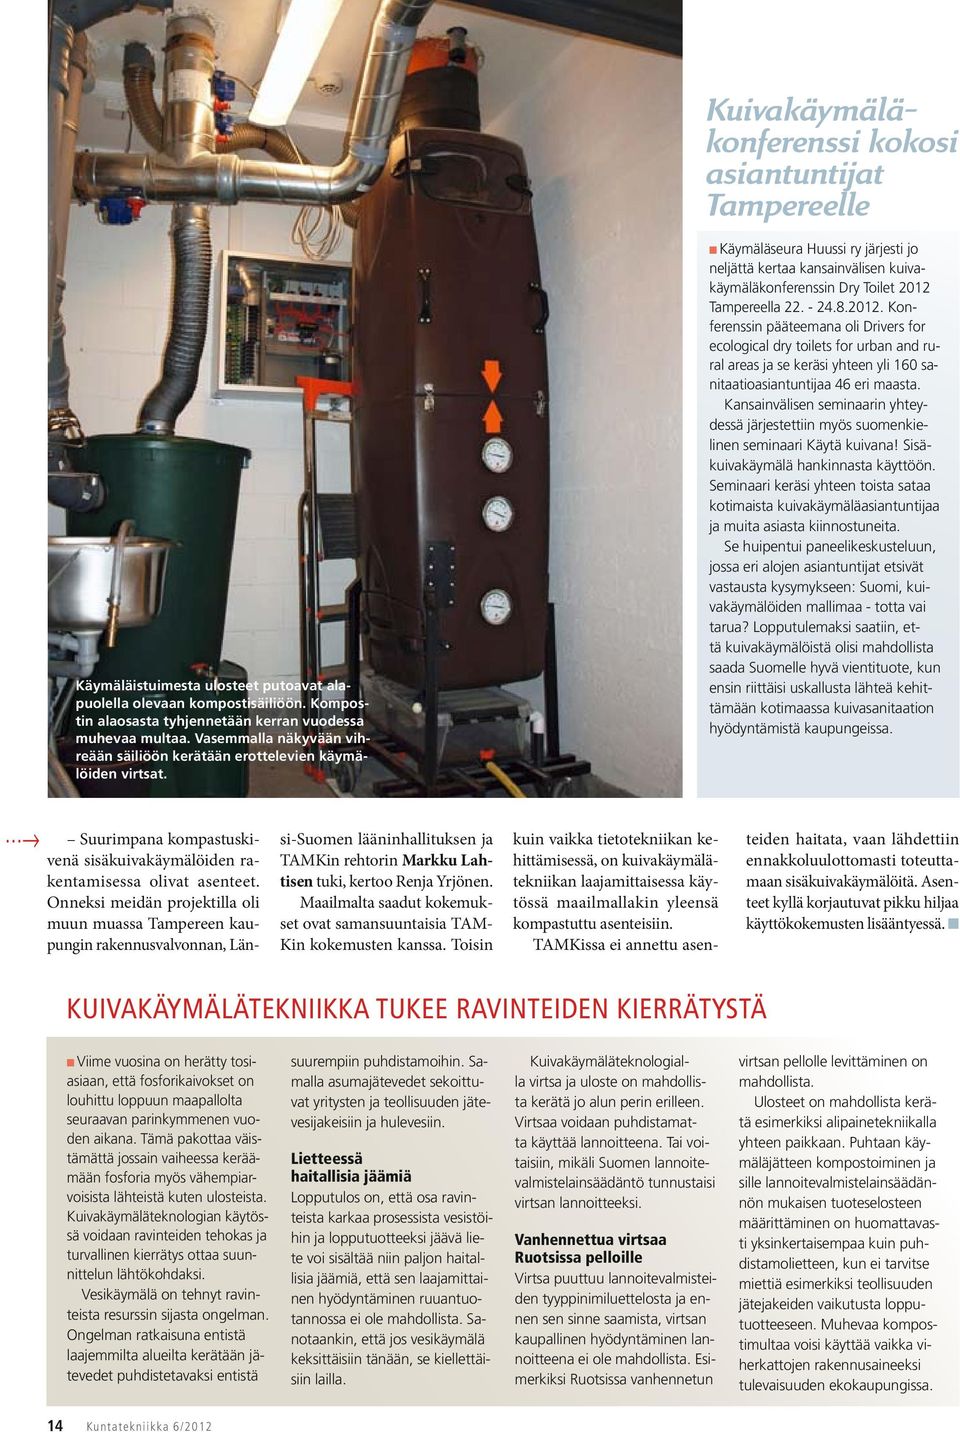 Käymäläseura Huussi ry järjesti jo neljättä kertaa kansainvälisen kuivakäymäläkonferenssin Dry Toilet 2012 